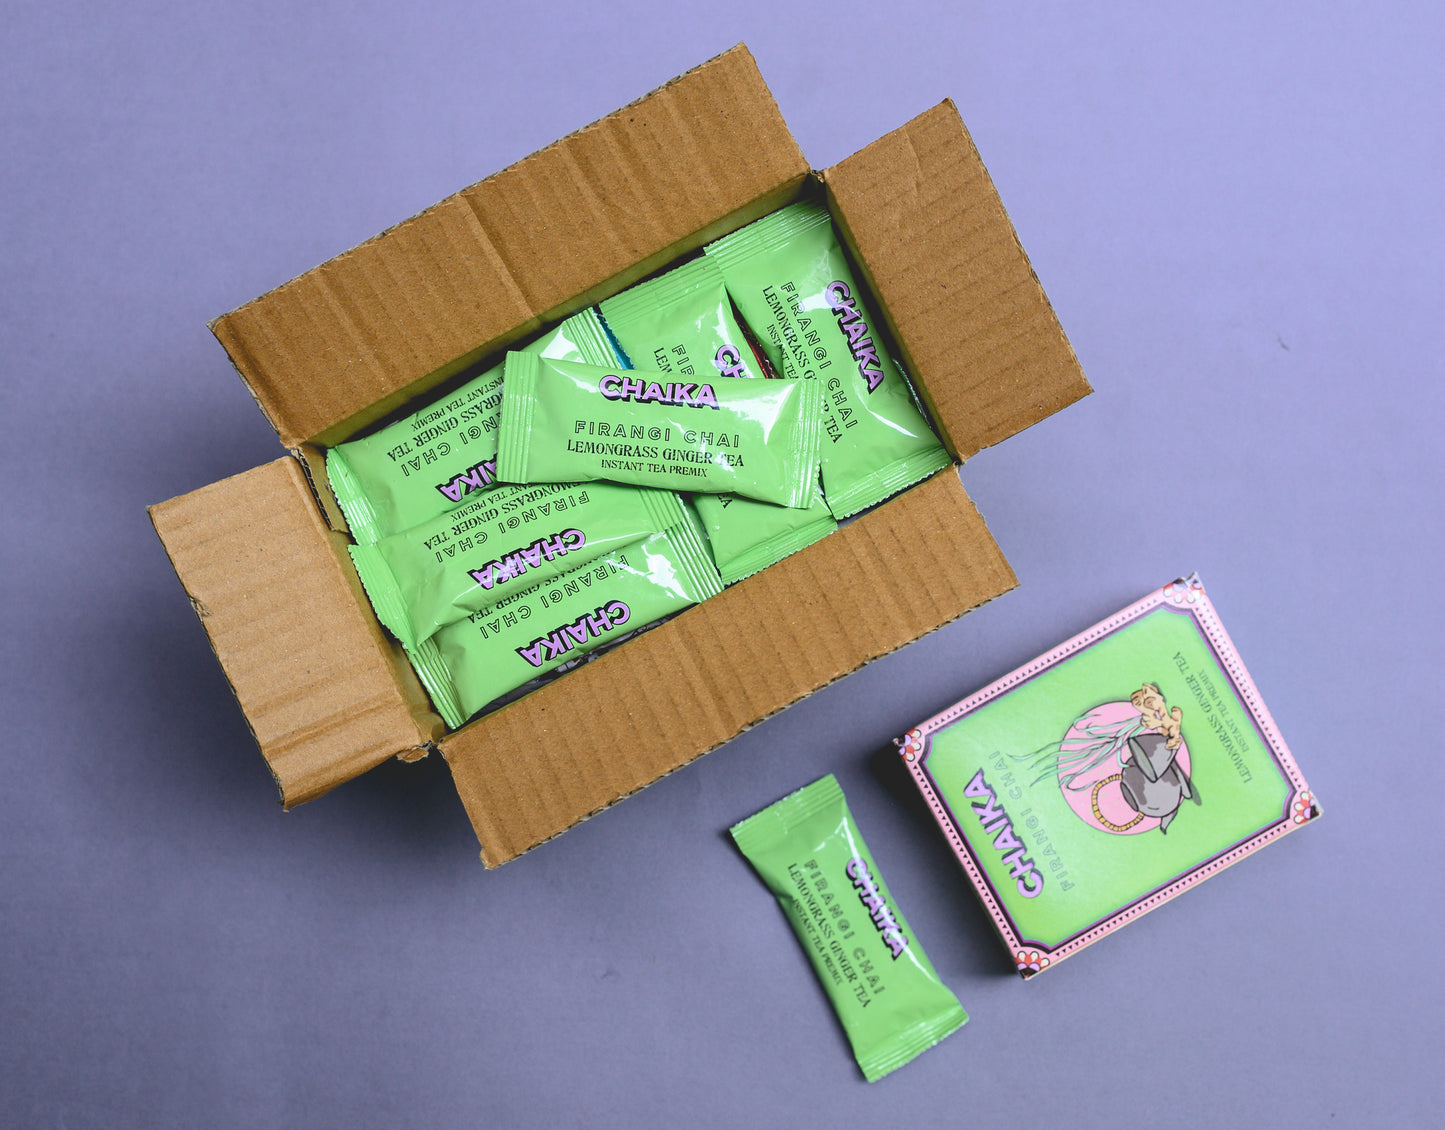 Premium Teas Packs for Gifting | Lemongrass Ginger Tea Pack | Chaika